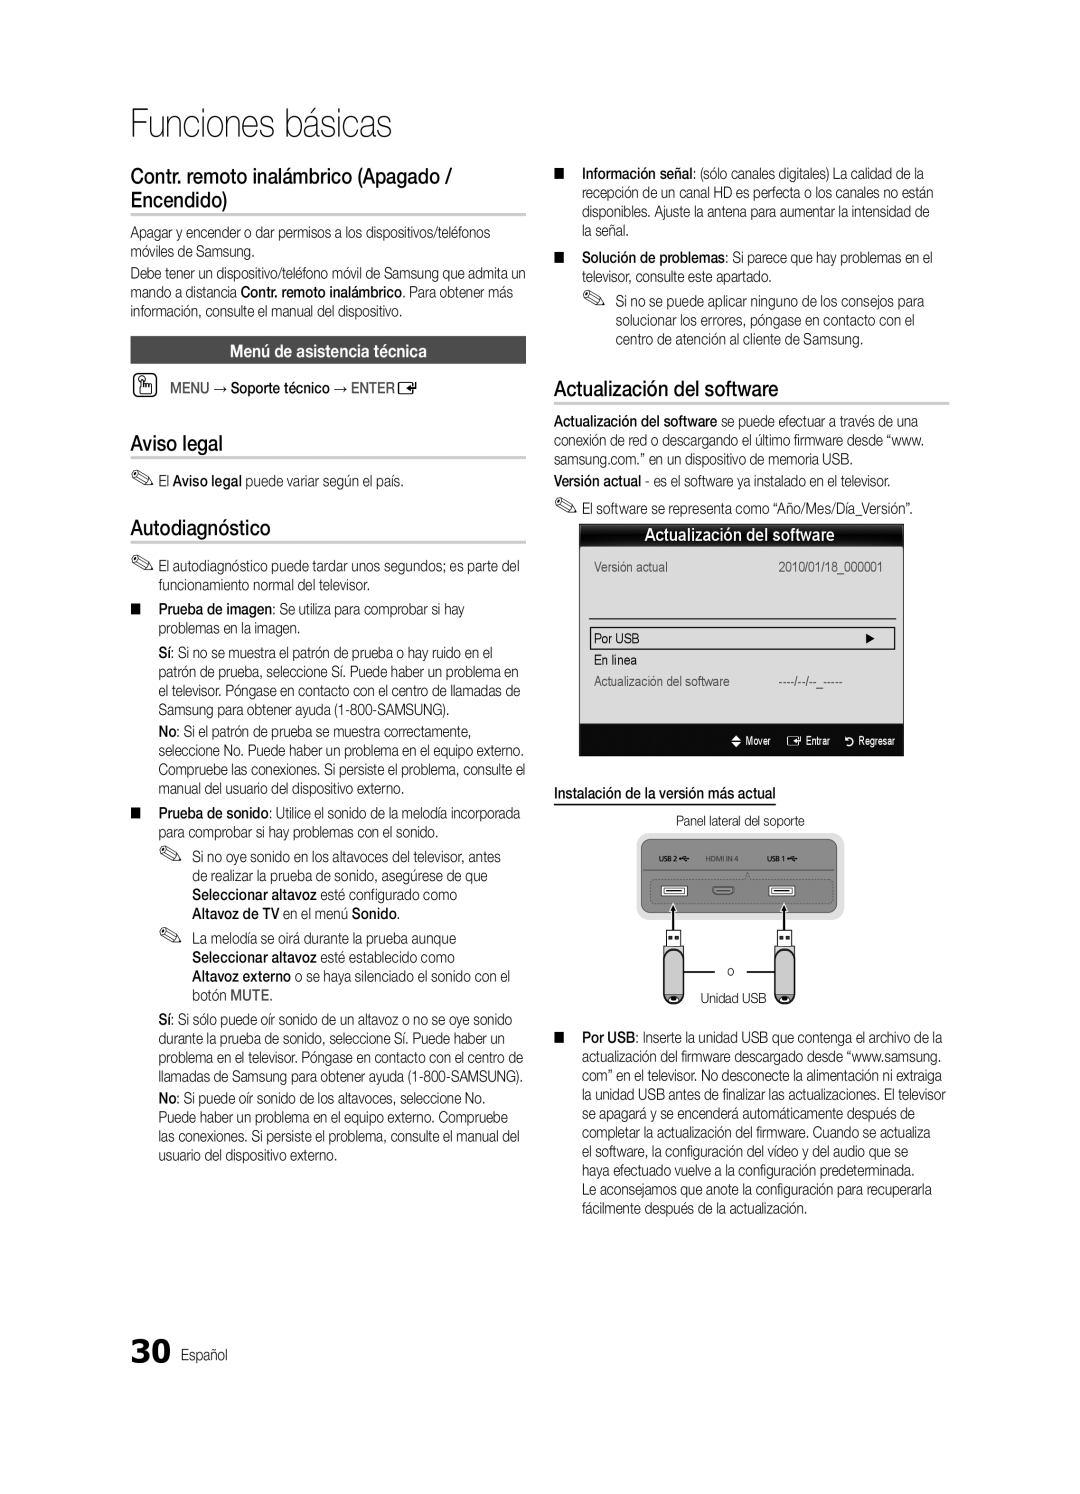 Samsung BN68-03088A-01 Contr. remoto inalámbrico Apagado / Encendido, Aviso legal, Autodiagnóstico, Funciones básicas 